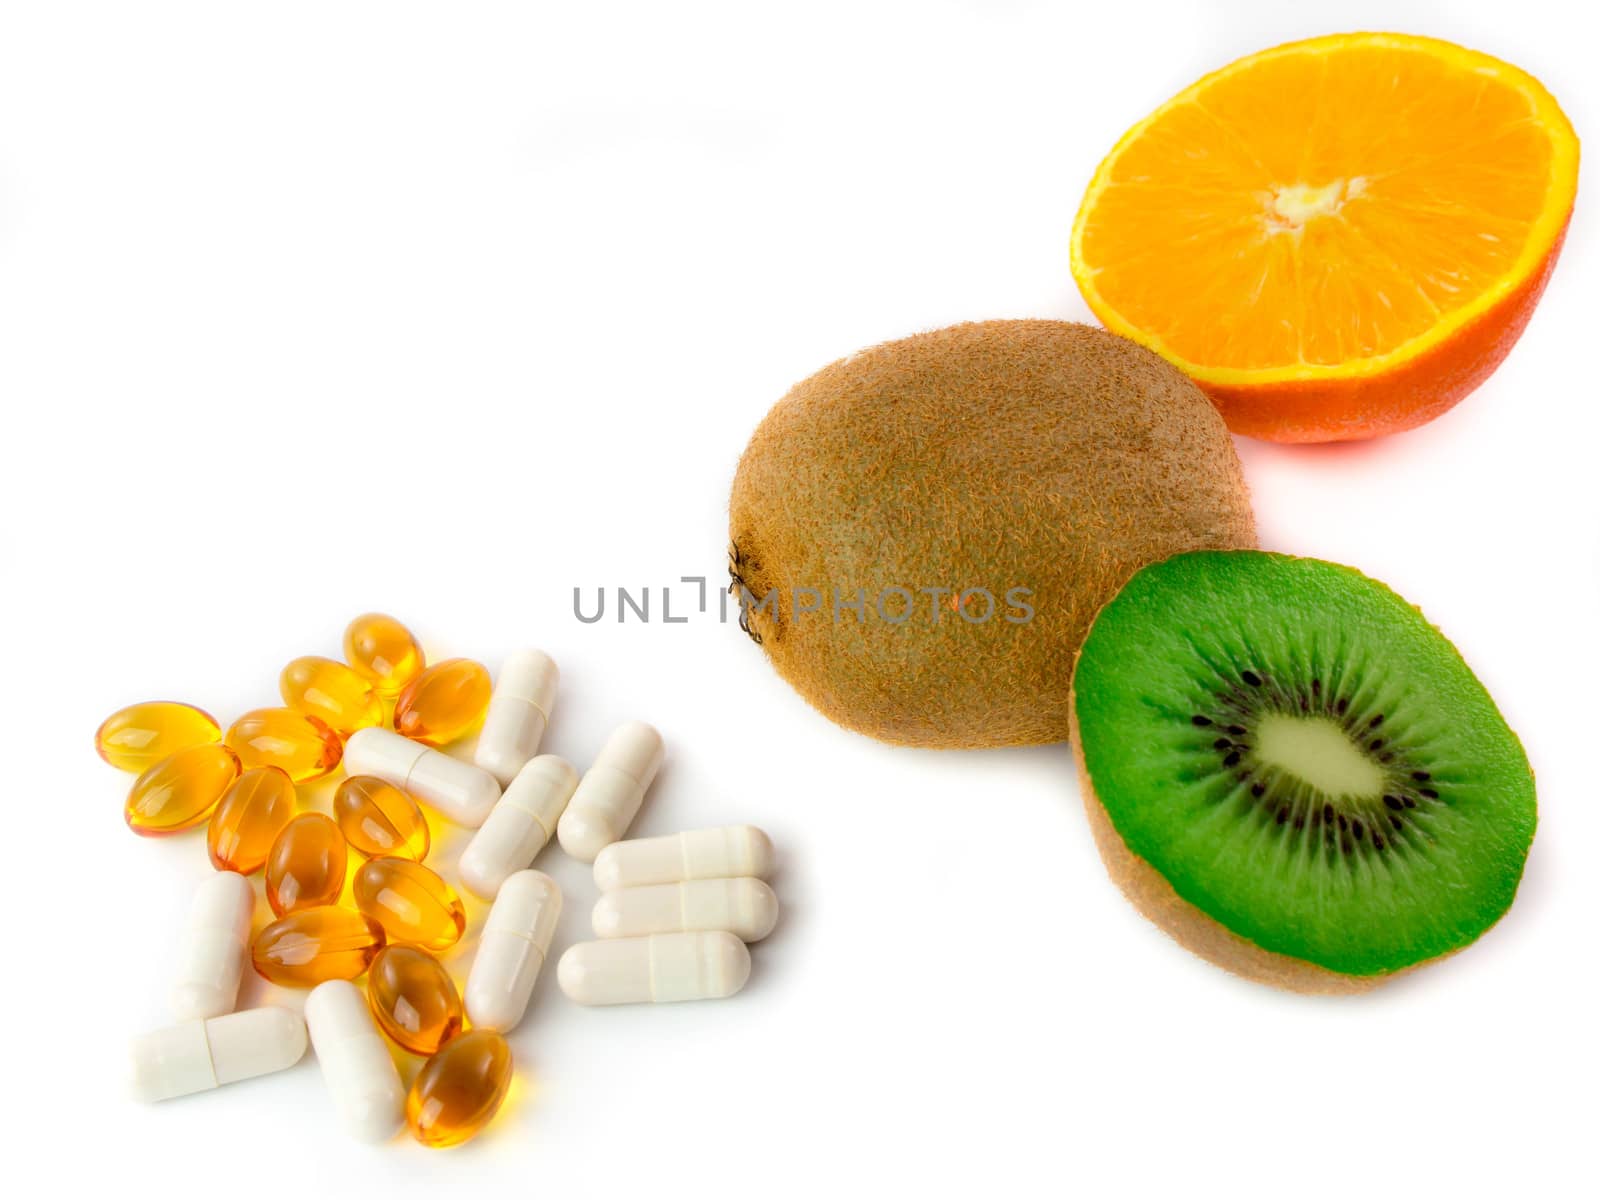 Various vitamin-rich fruits and vitamin tablets